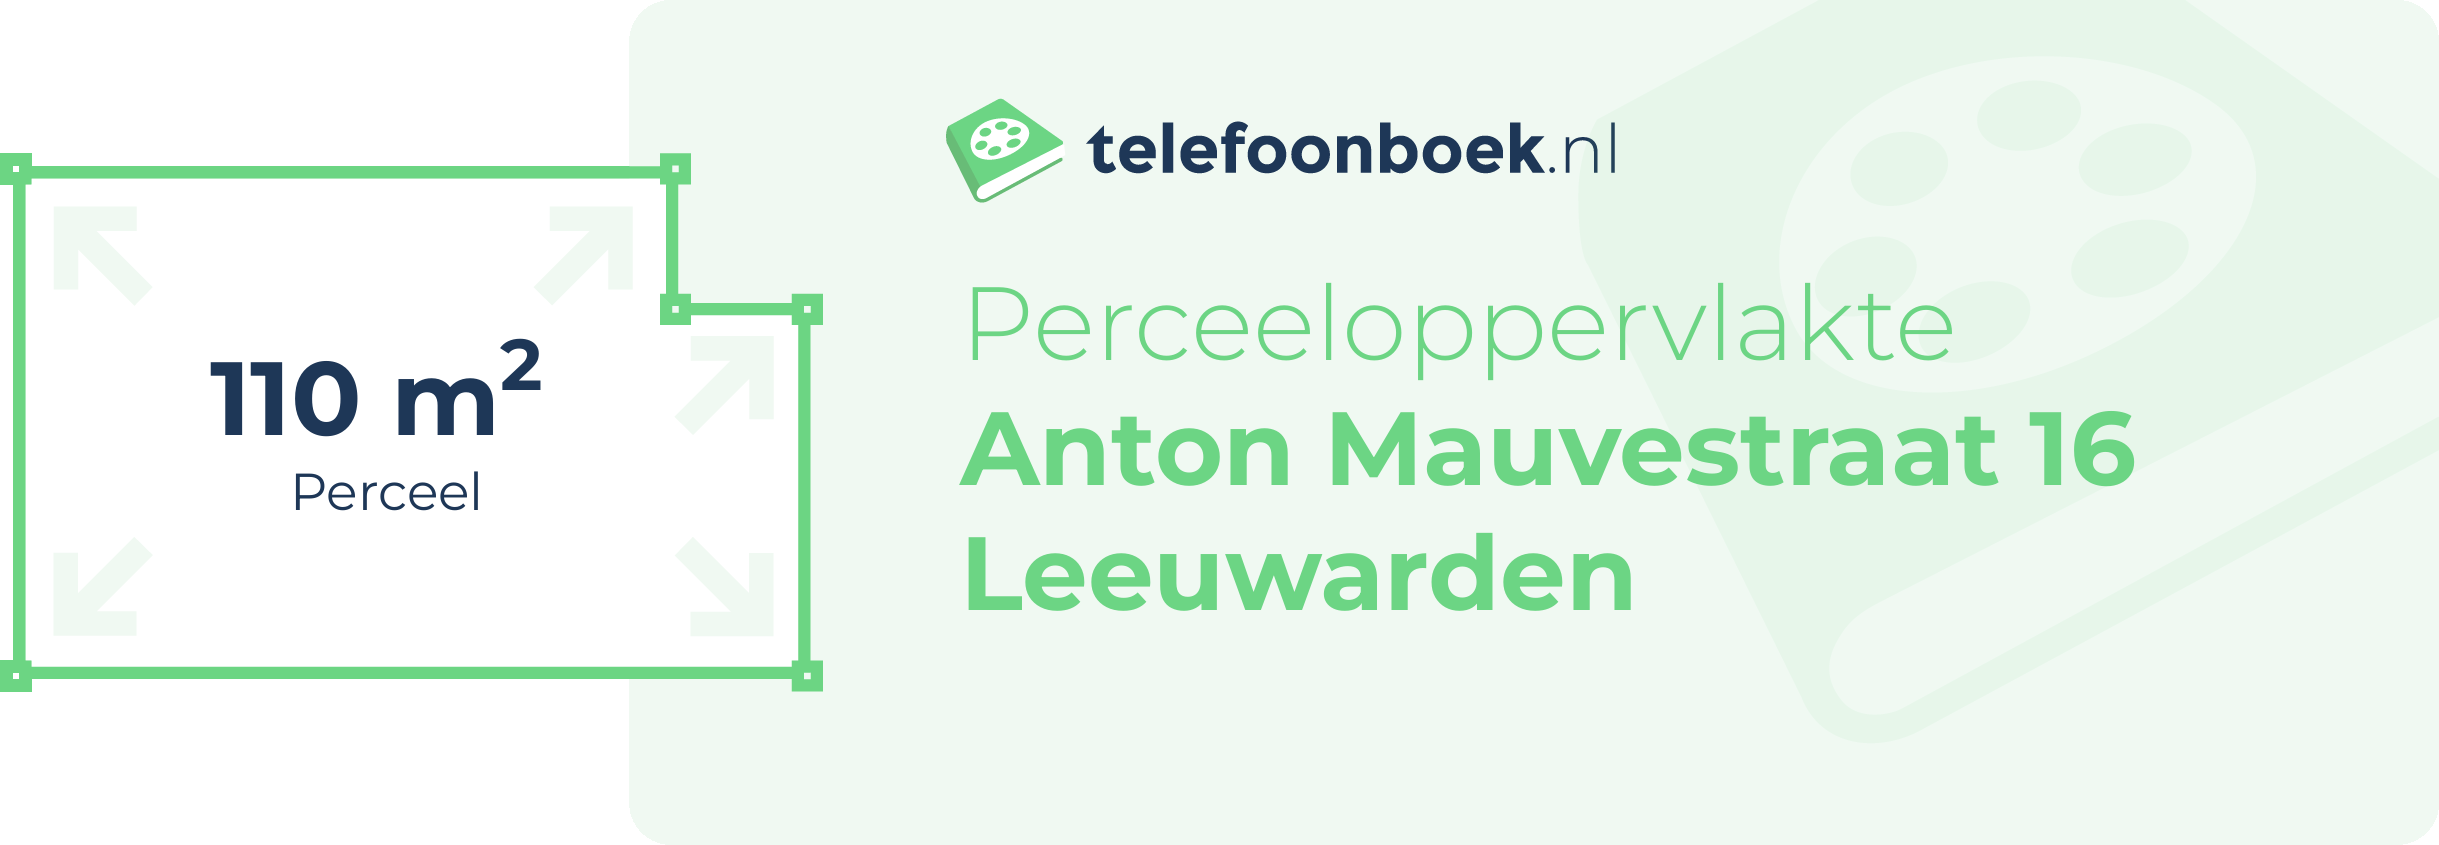 Perceeloppervlakte Anton Mauvestraat 16 Leeuwarden